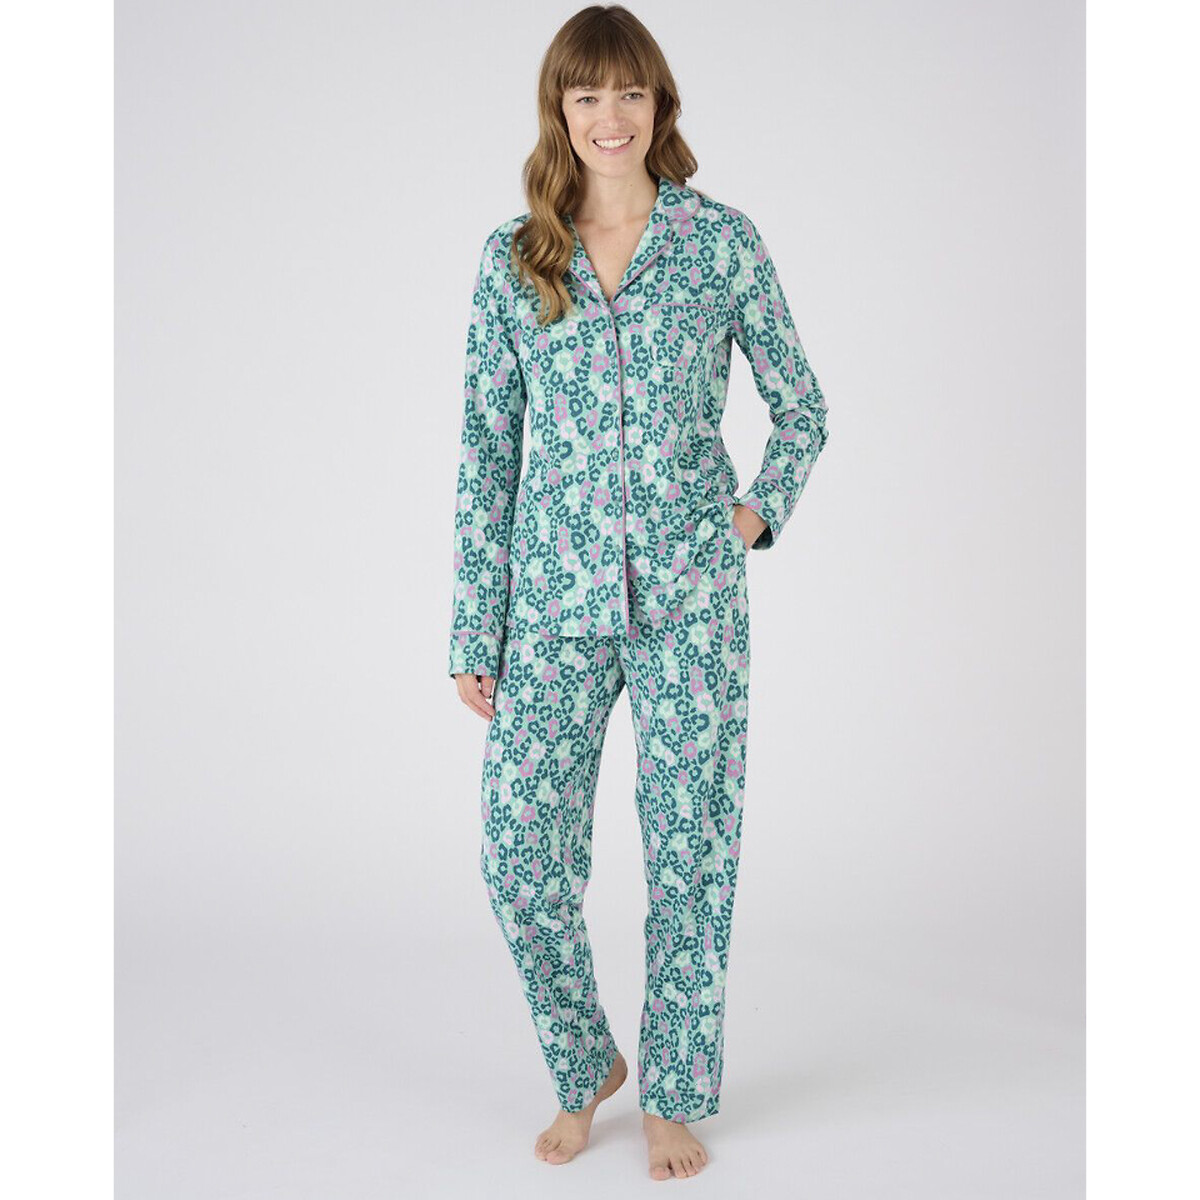 thermolactyl pyjamas